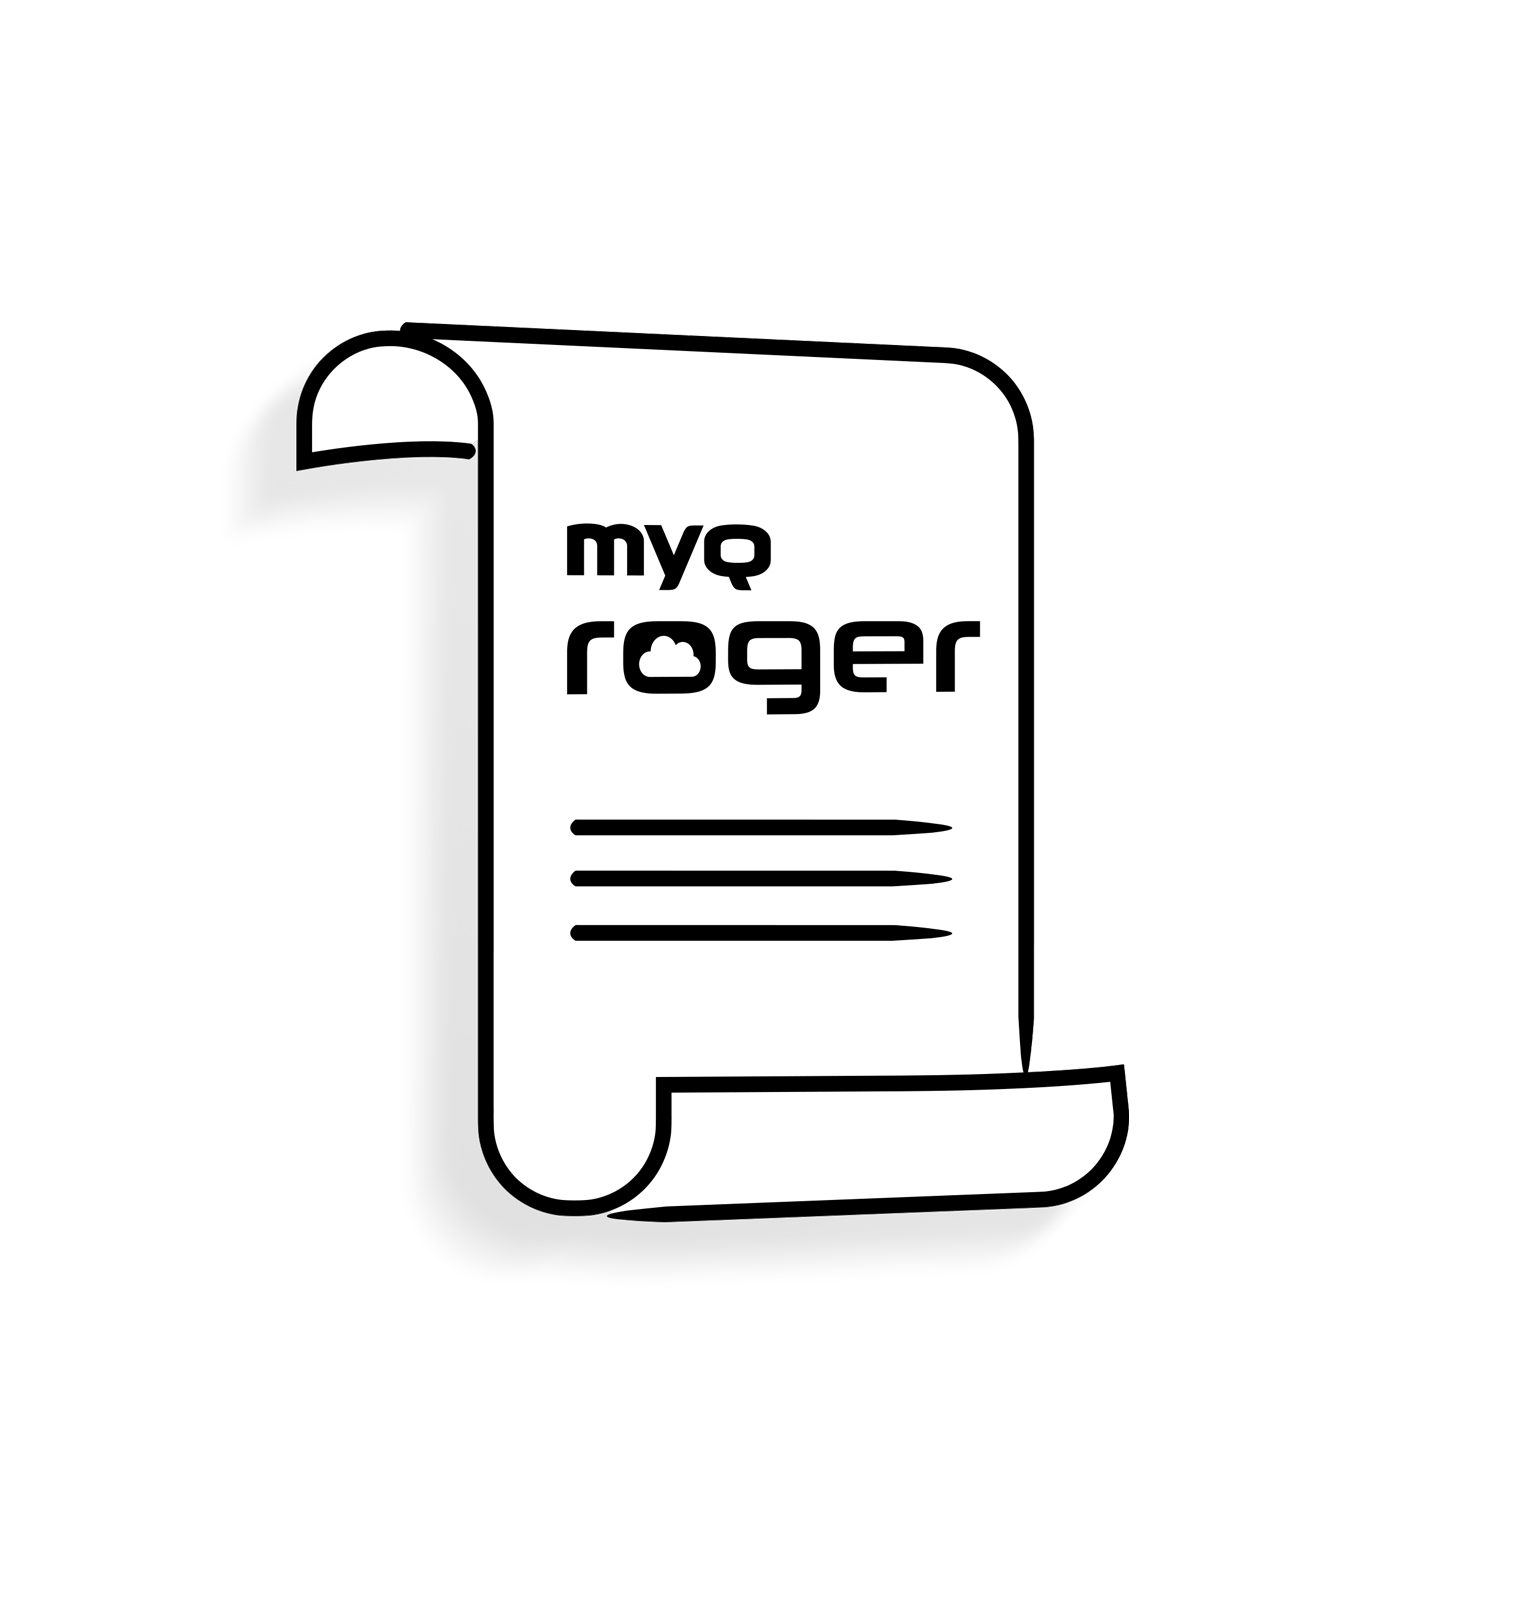 與 MyQ Roger 相關的檔案 